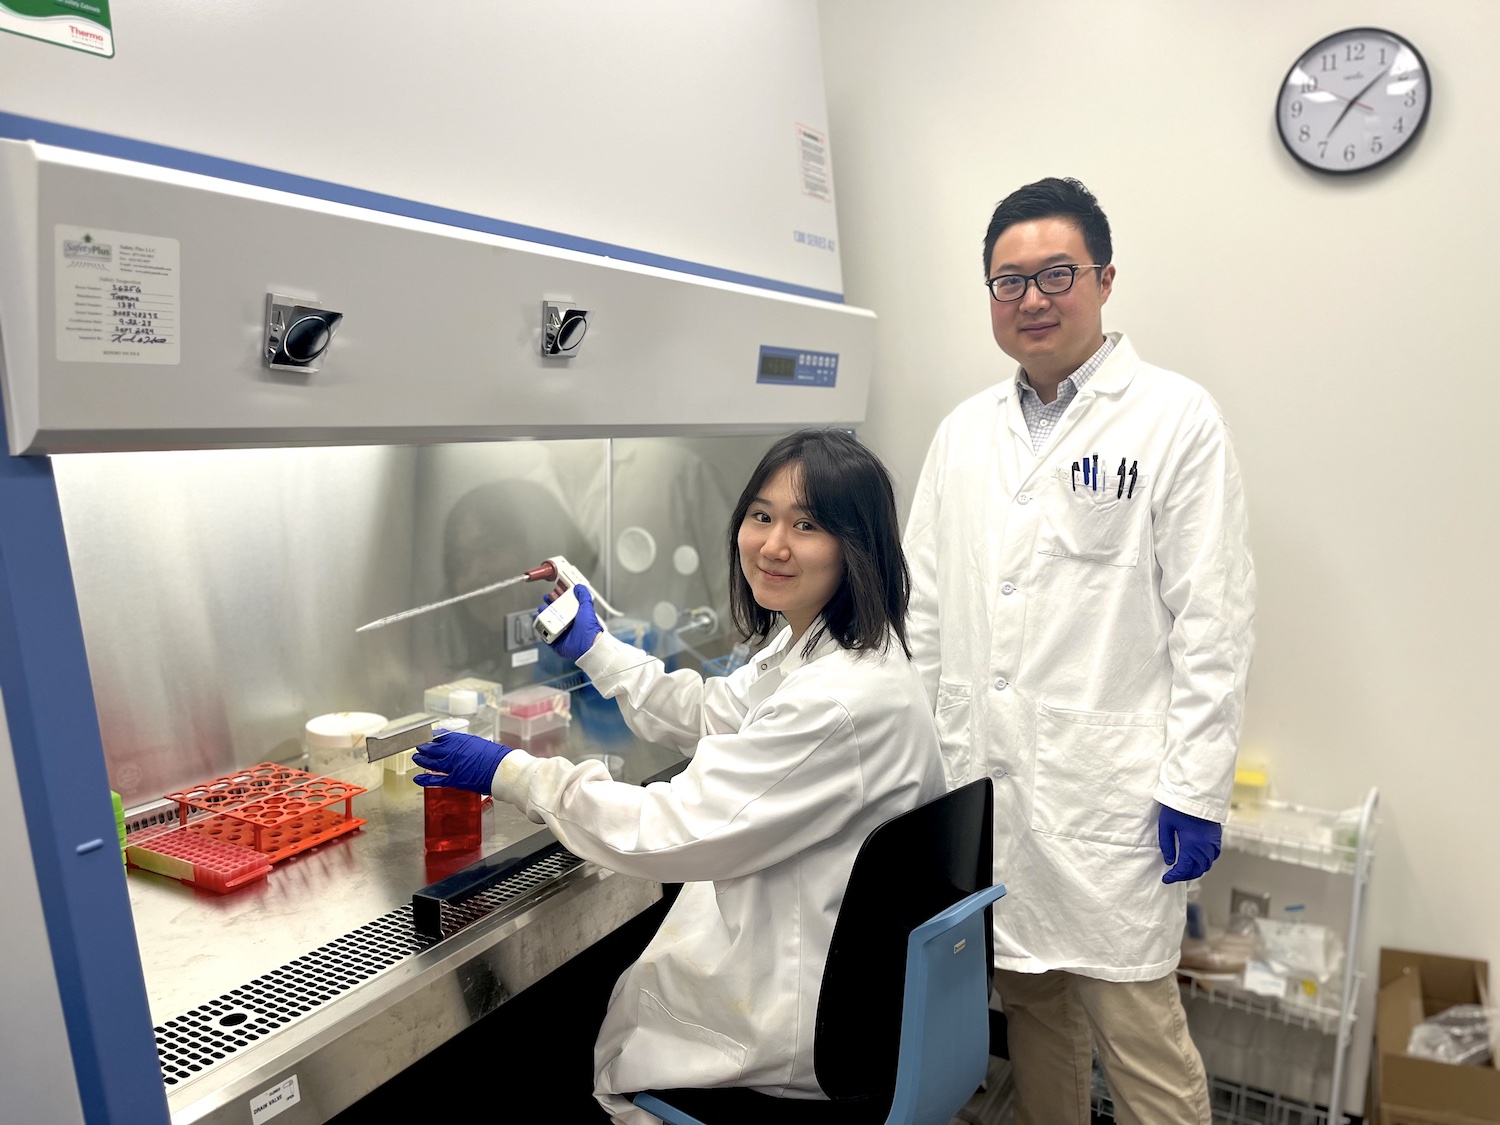 Qiao Jiao and Yueming Zhu, PhD